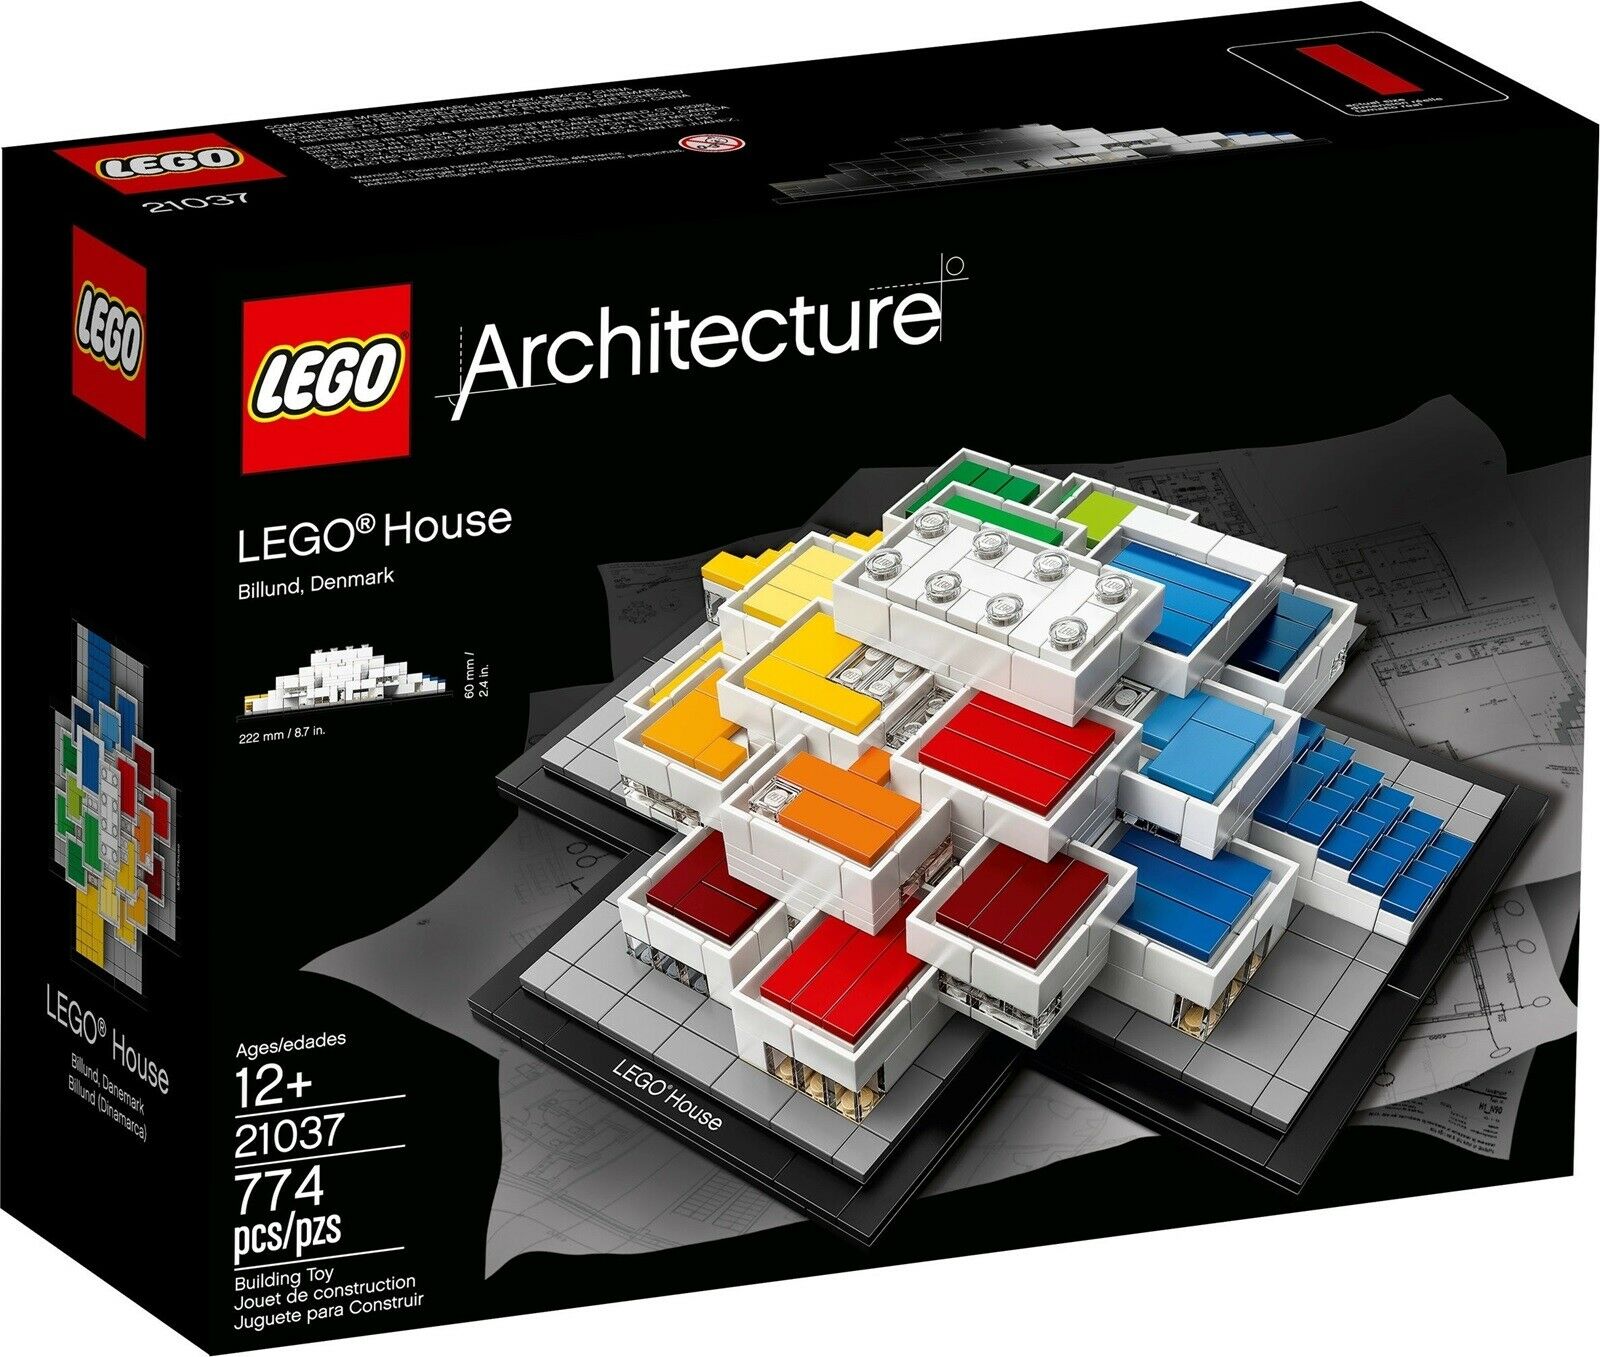 anker Blandet Radioaktiv Lego Architecture, 21037 LEGO House Uåbnet – dba.dk – Køb og Salg af Nyt og  Brugt